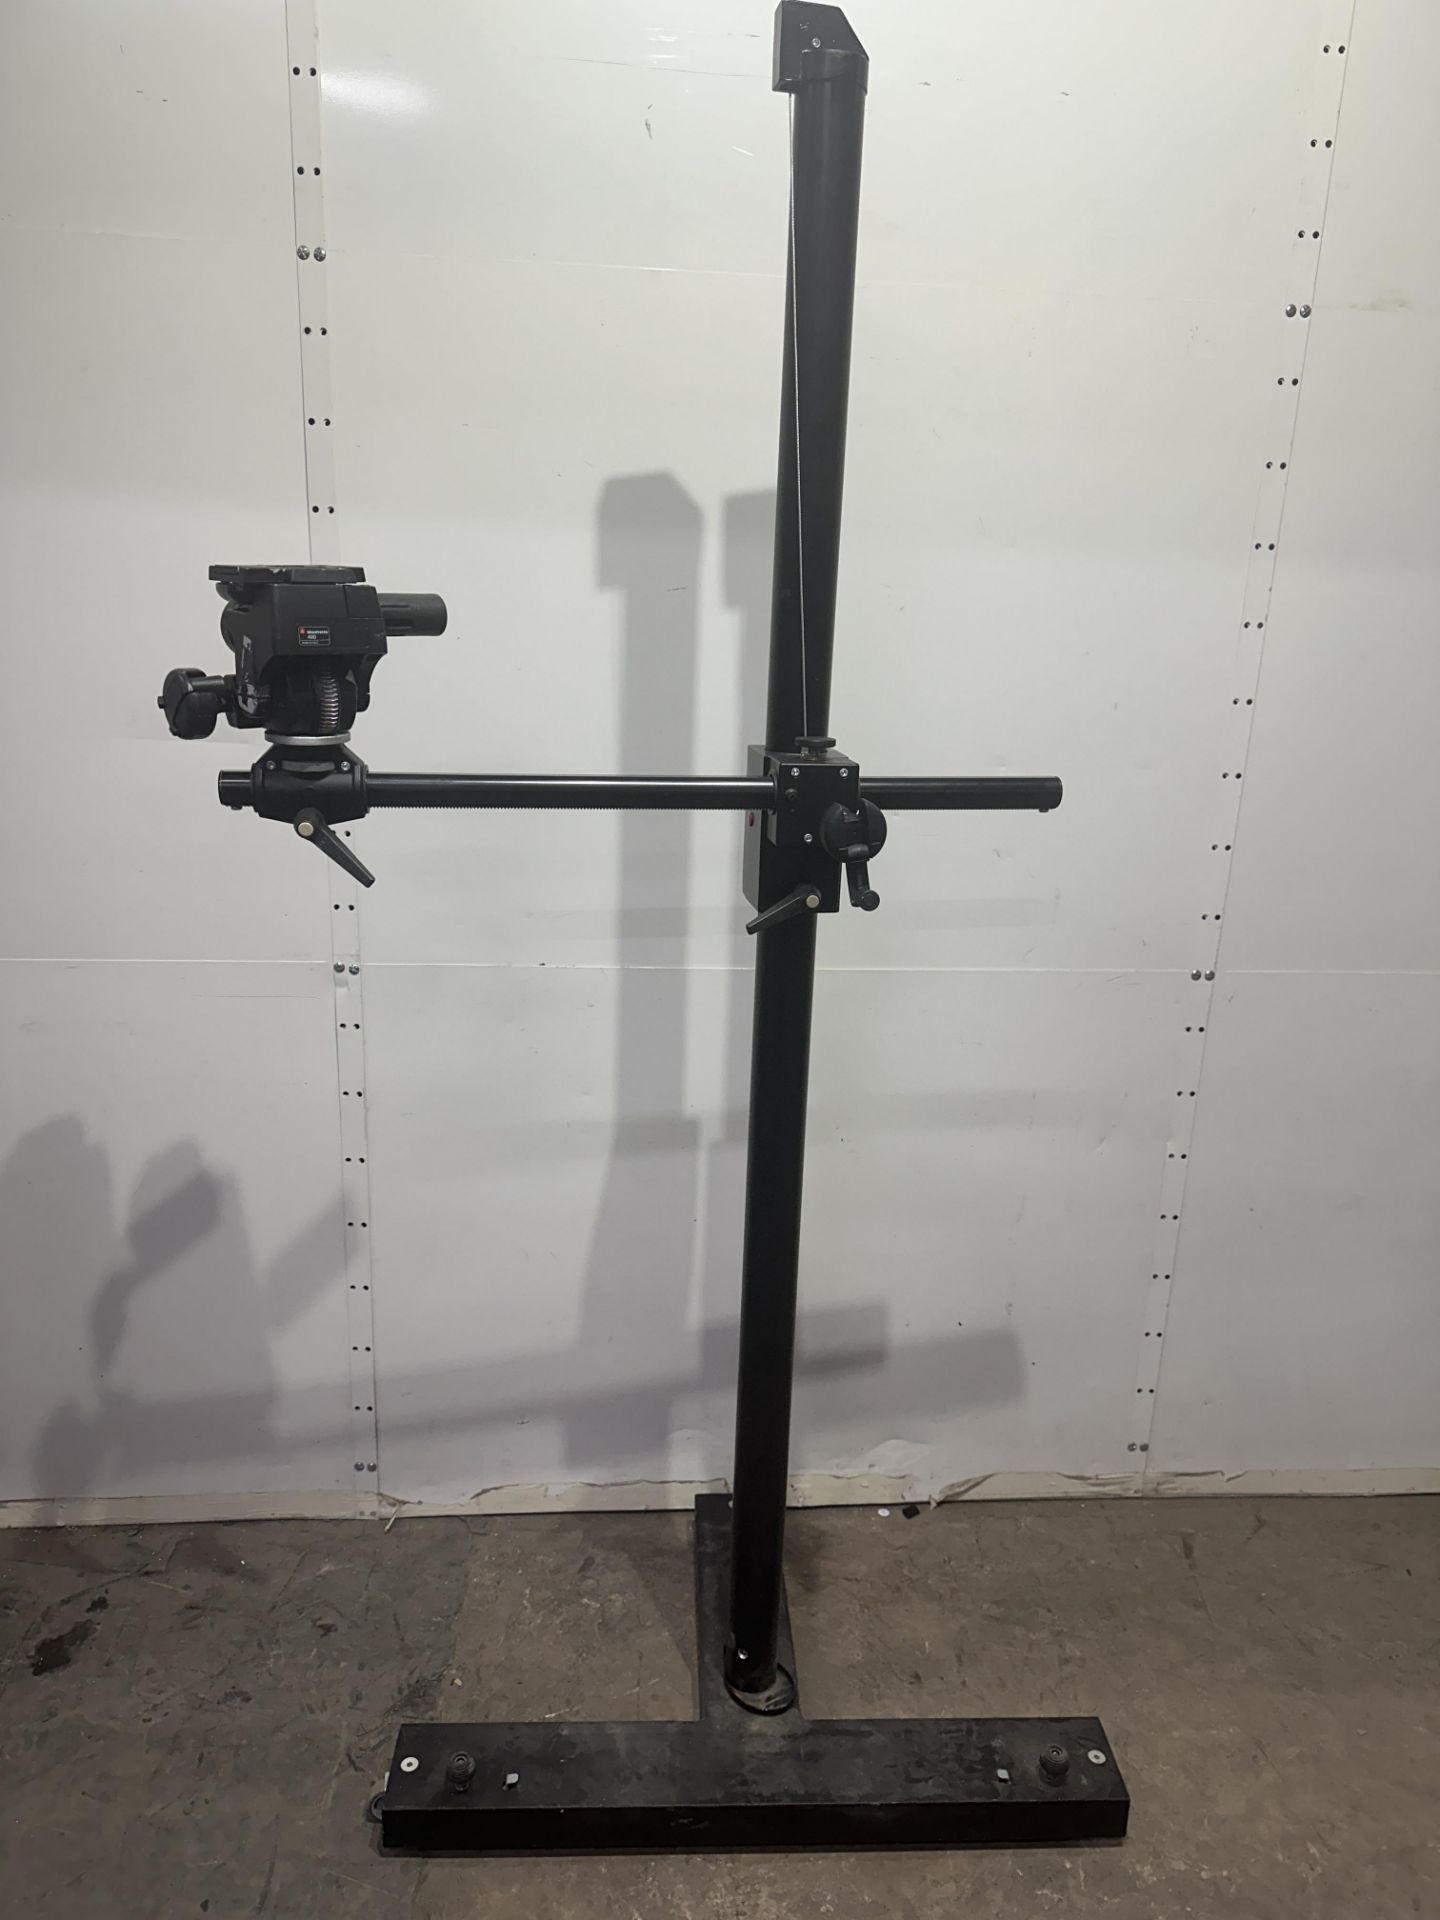 Manfrotto Mini Salon Studio camera stand 190 cm high with Monfrotto 410 geared head